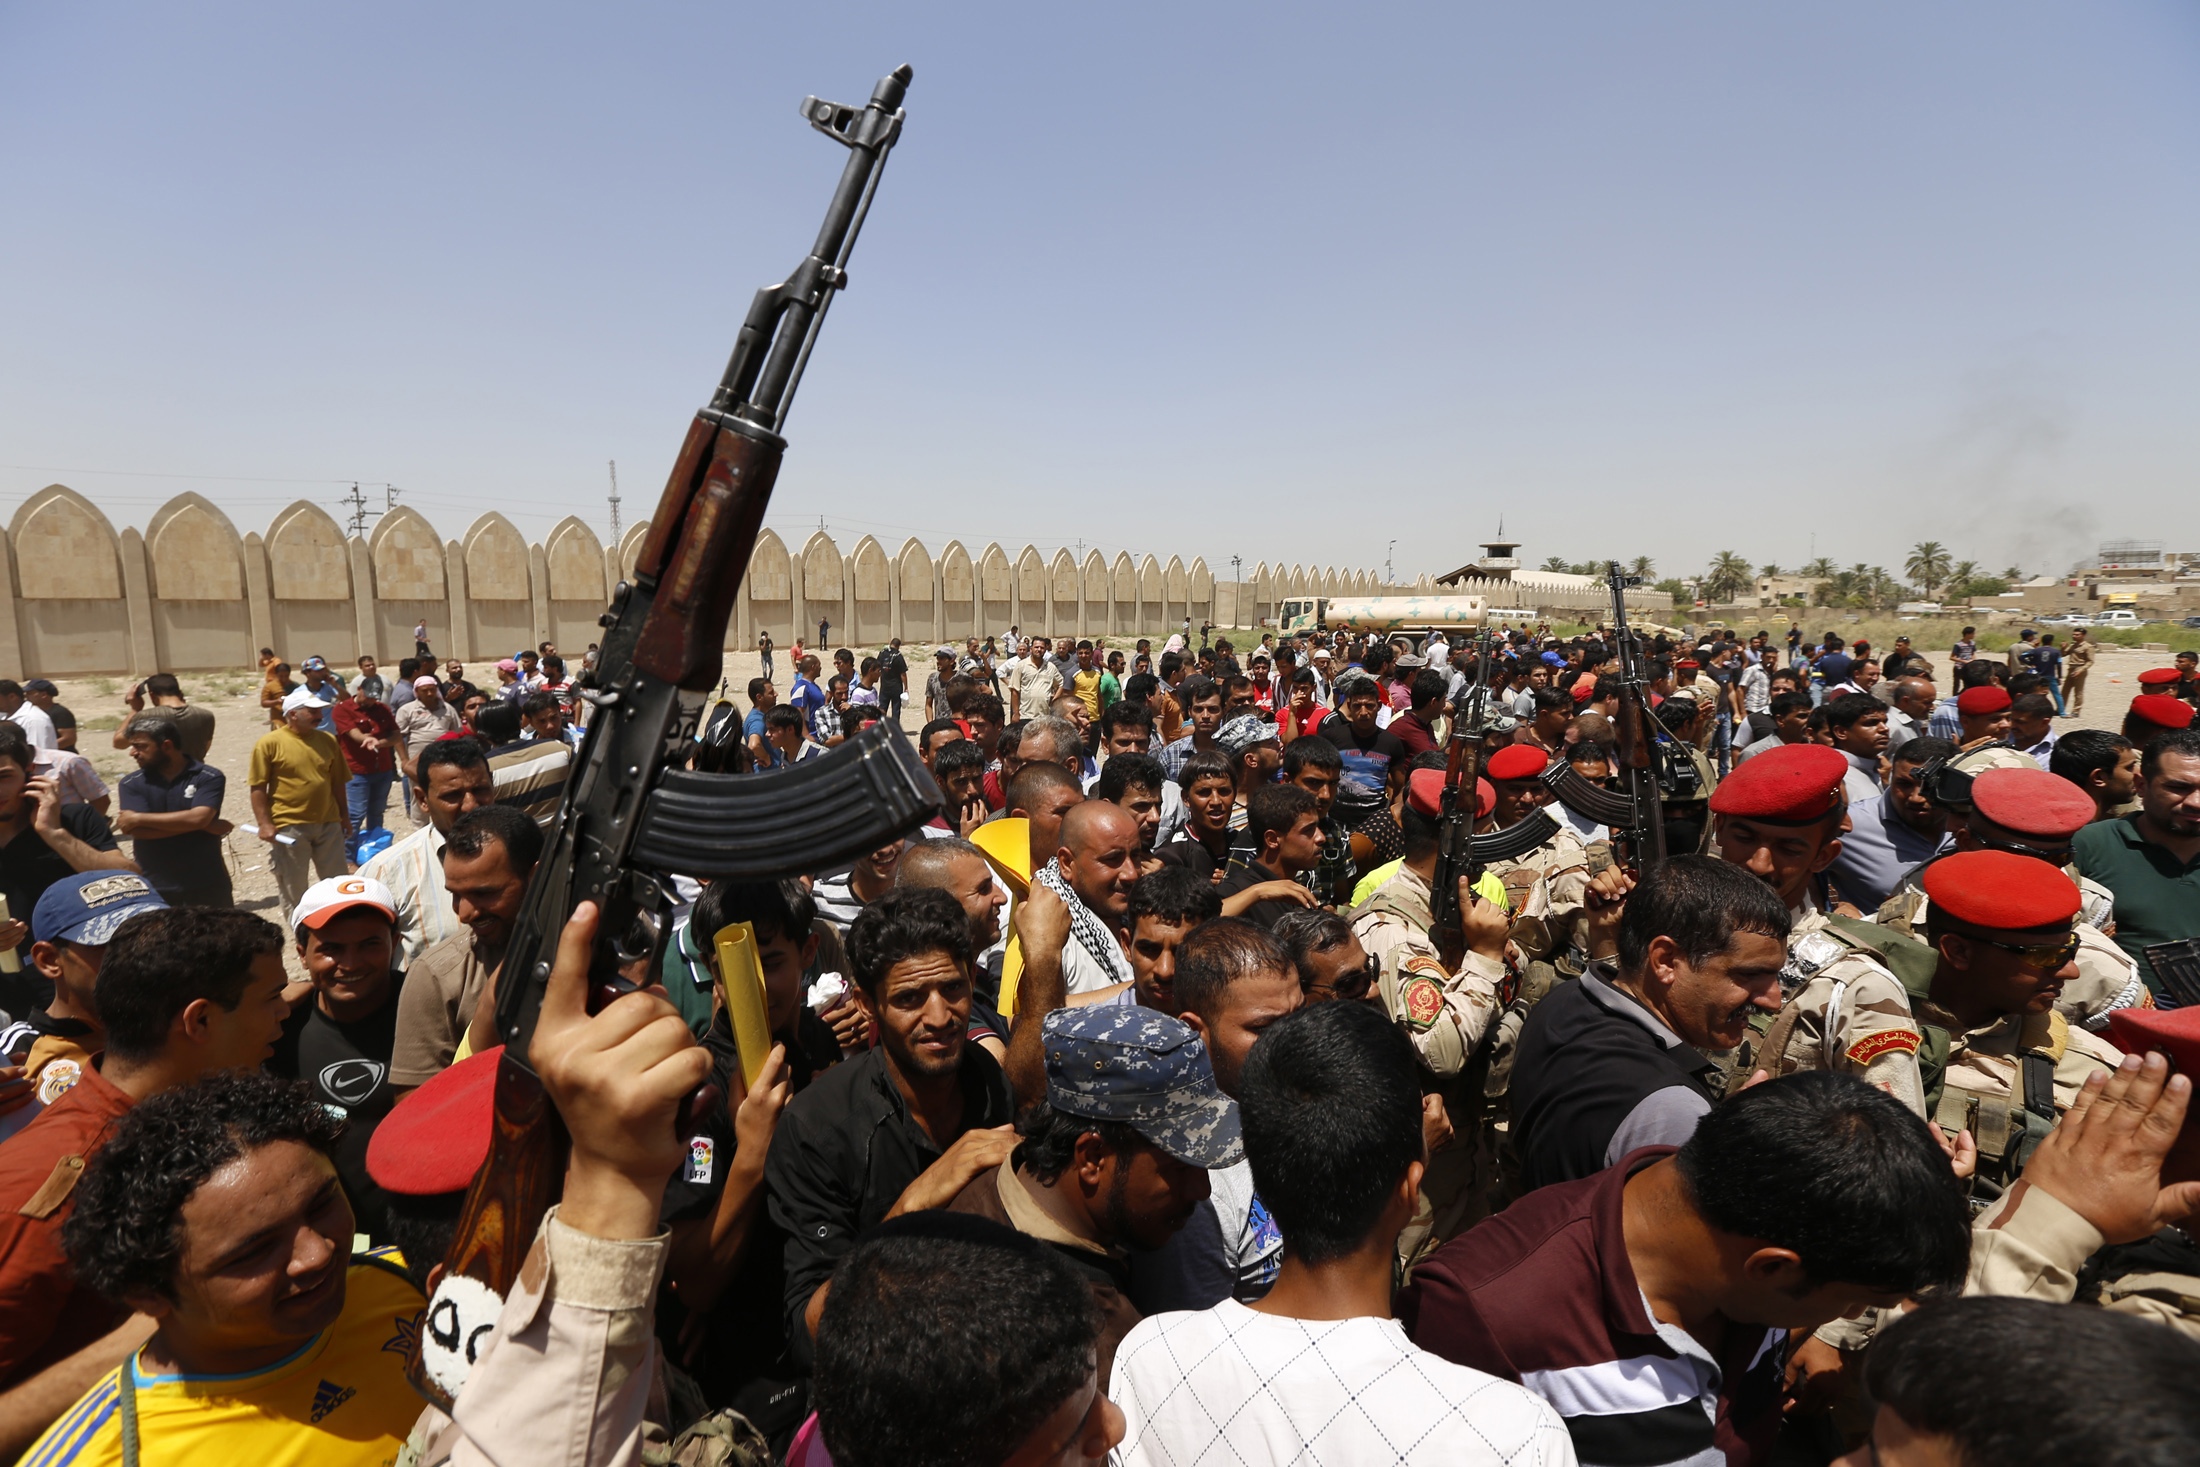 Φωτό - Reuters - Στα όπλα οι εθελοντές, στο πλευρό του ιρακινού στρατού